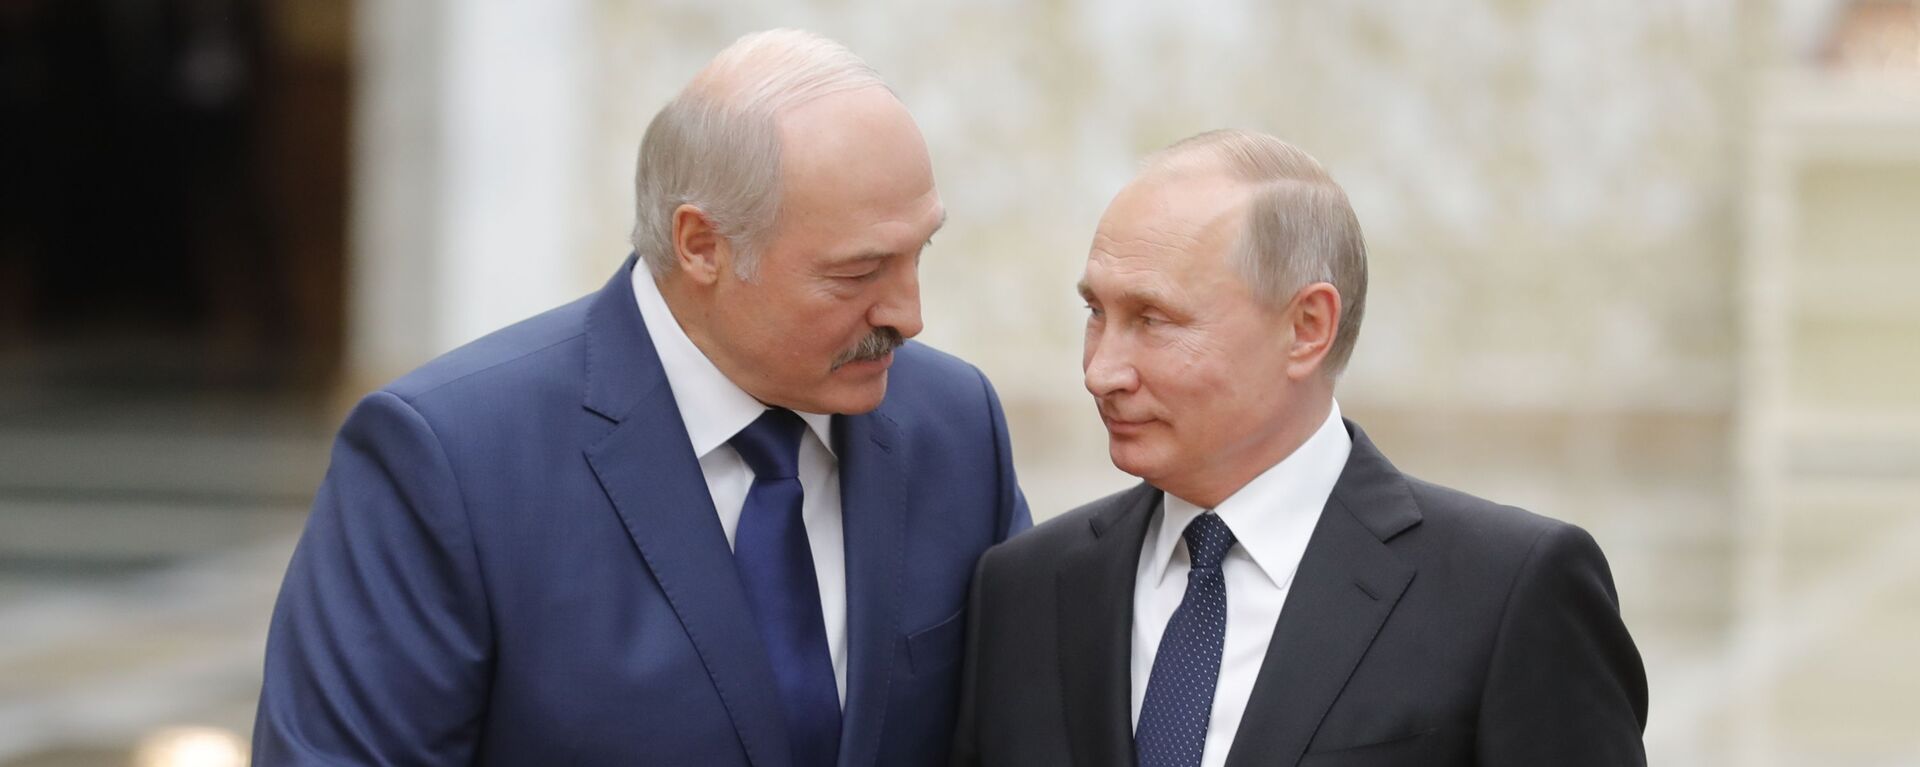 Президент РФ Владимир Путин и президент Беларуси Александр Лукашенко - Sputnik Таджикистан, 1920, 10.01.2021